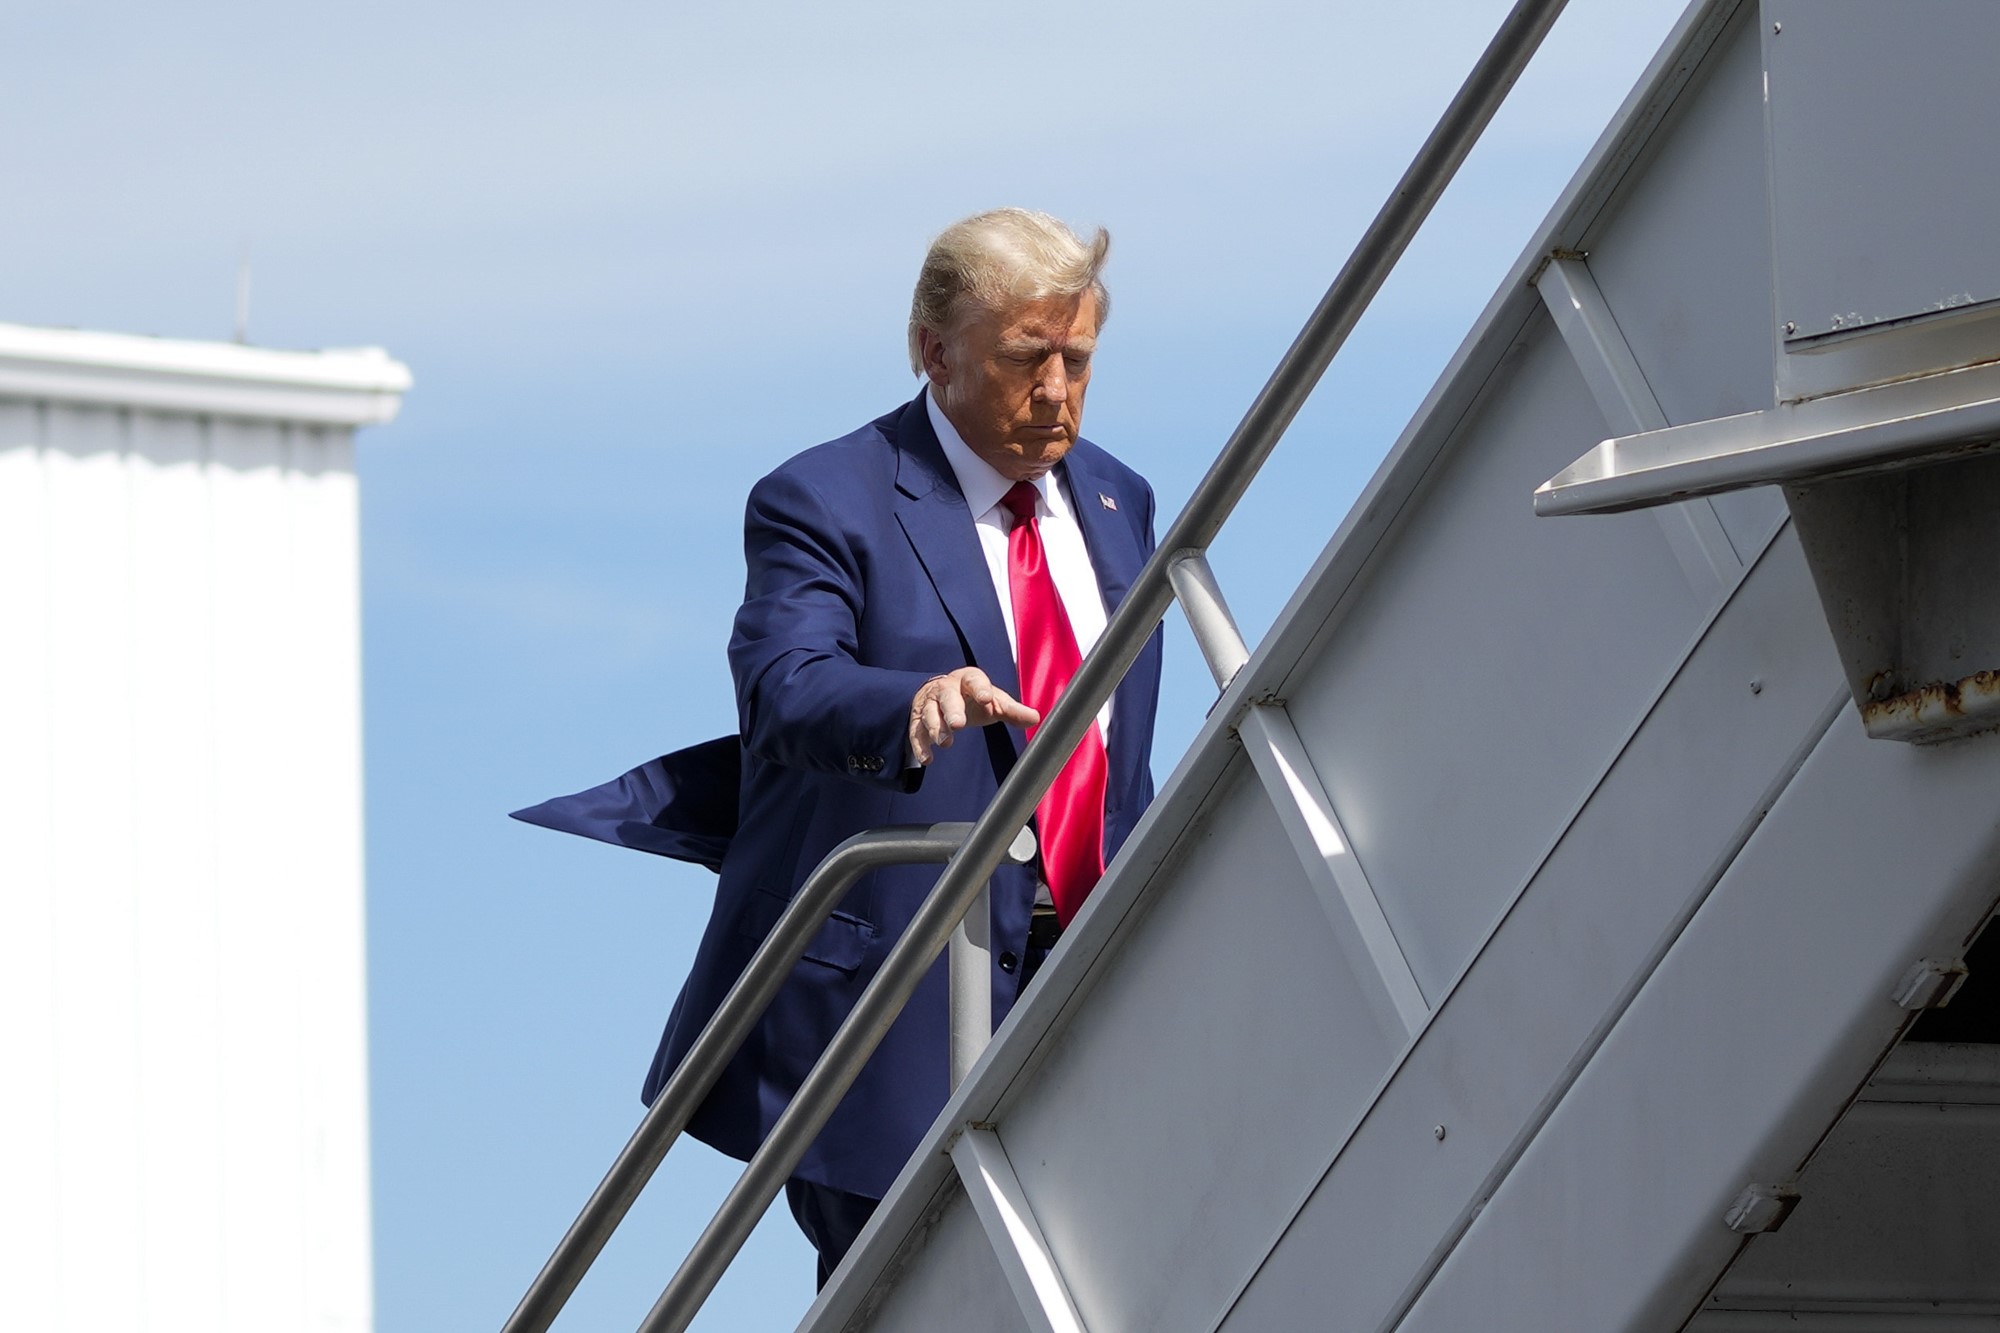 Donald Trump boards his personal plane.